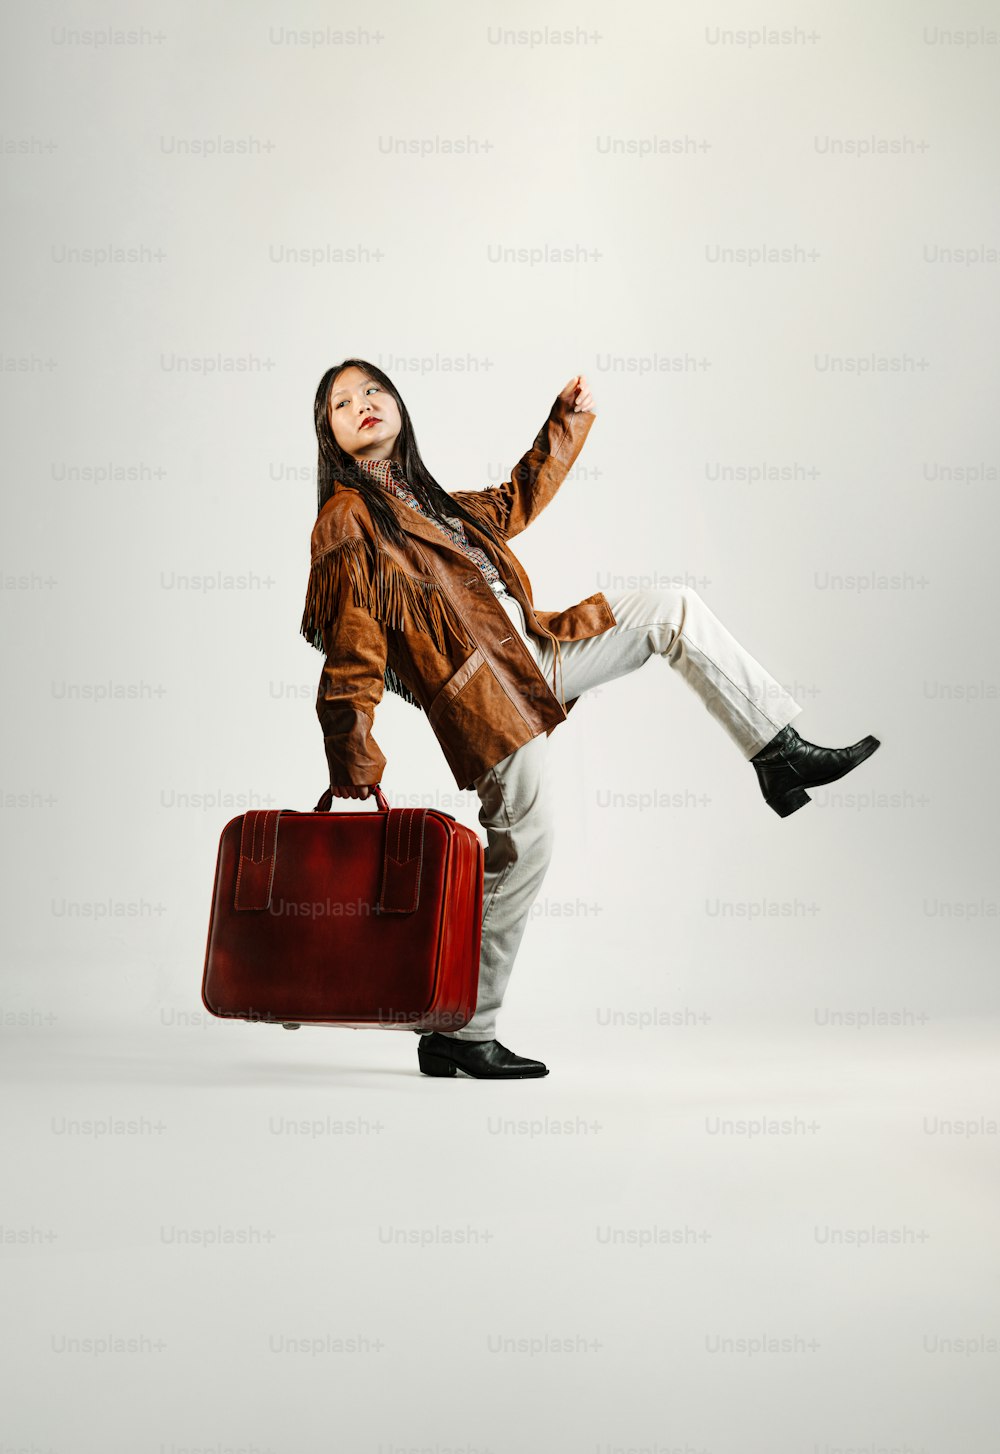 Una mujer con una chaqueta marrón sostiene una maleta roja